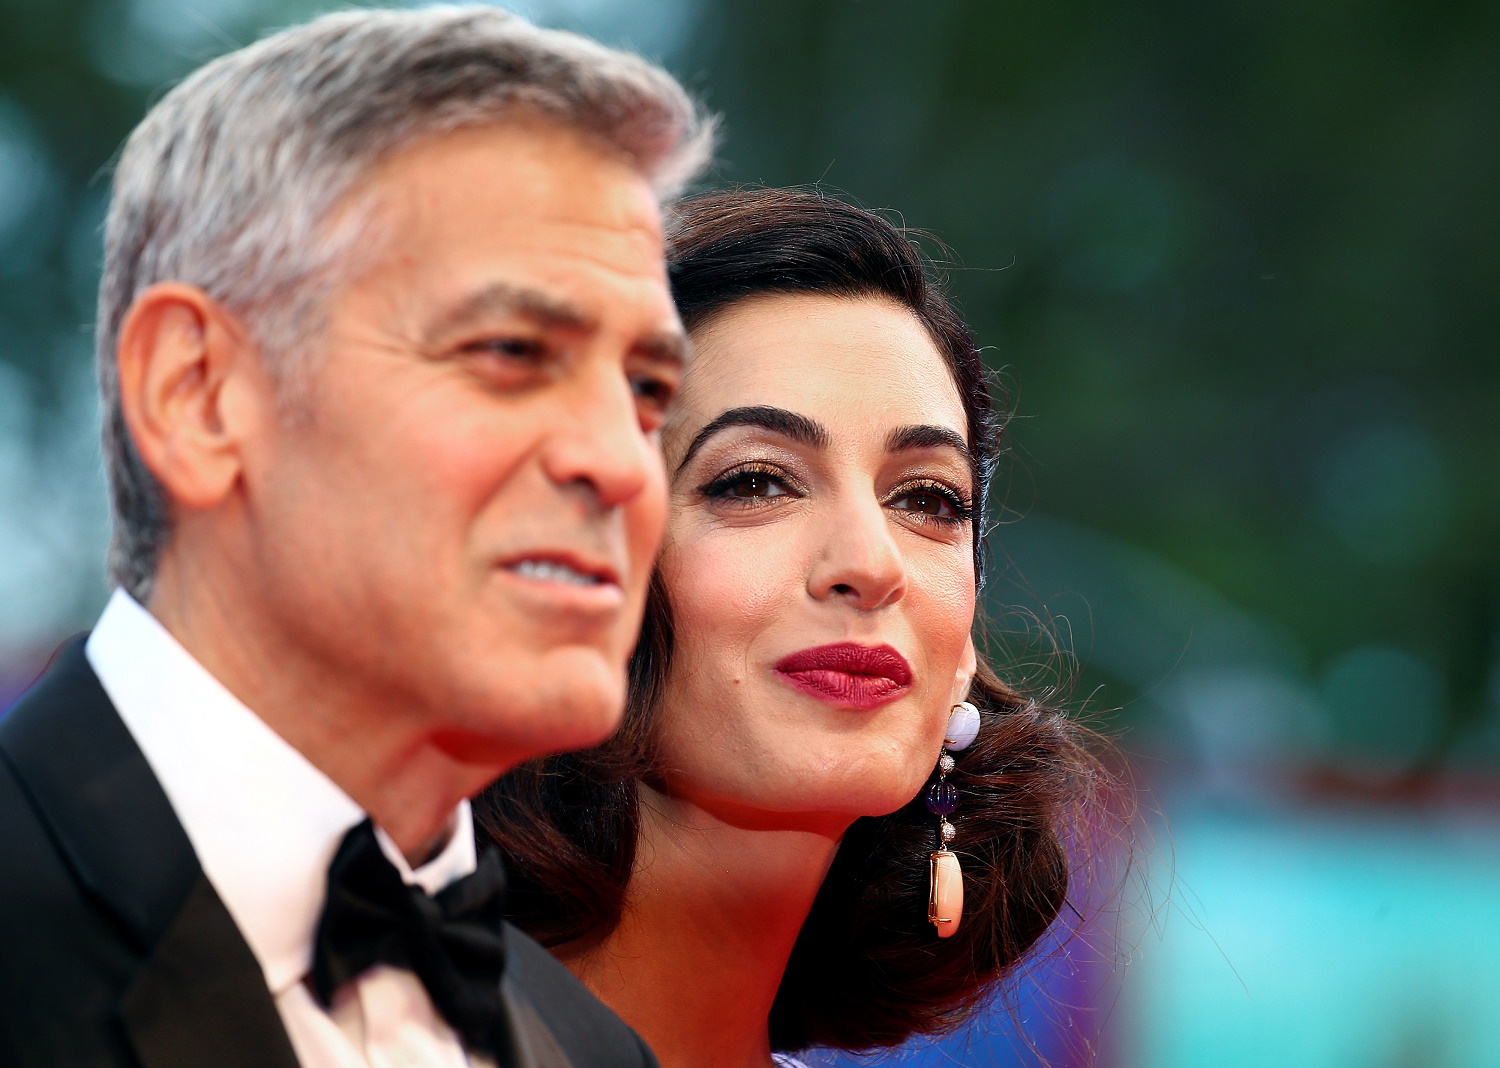 ¿Habrá más bebés Clooney? No es probable, dice Amal Clooney